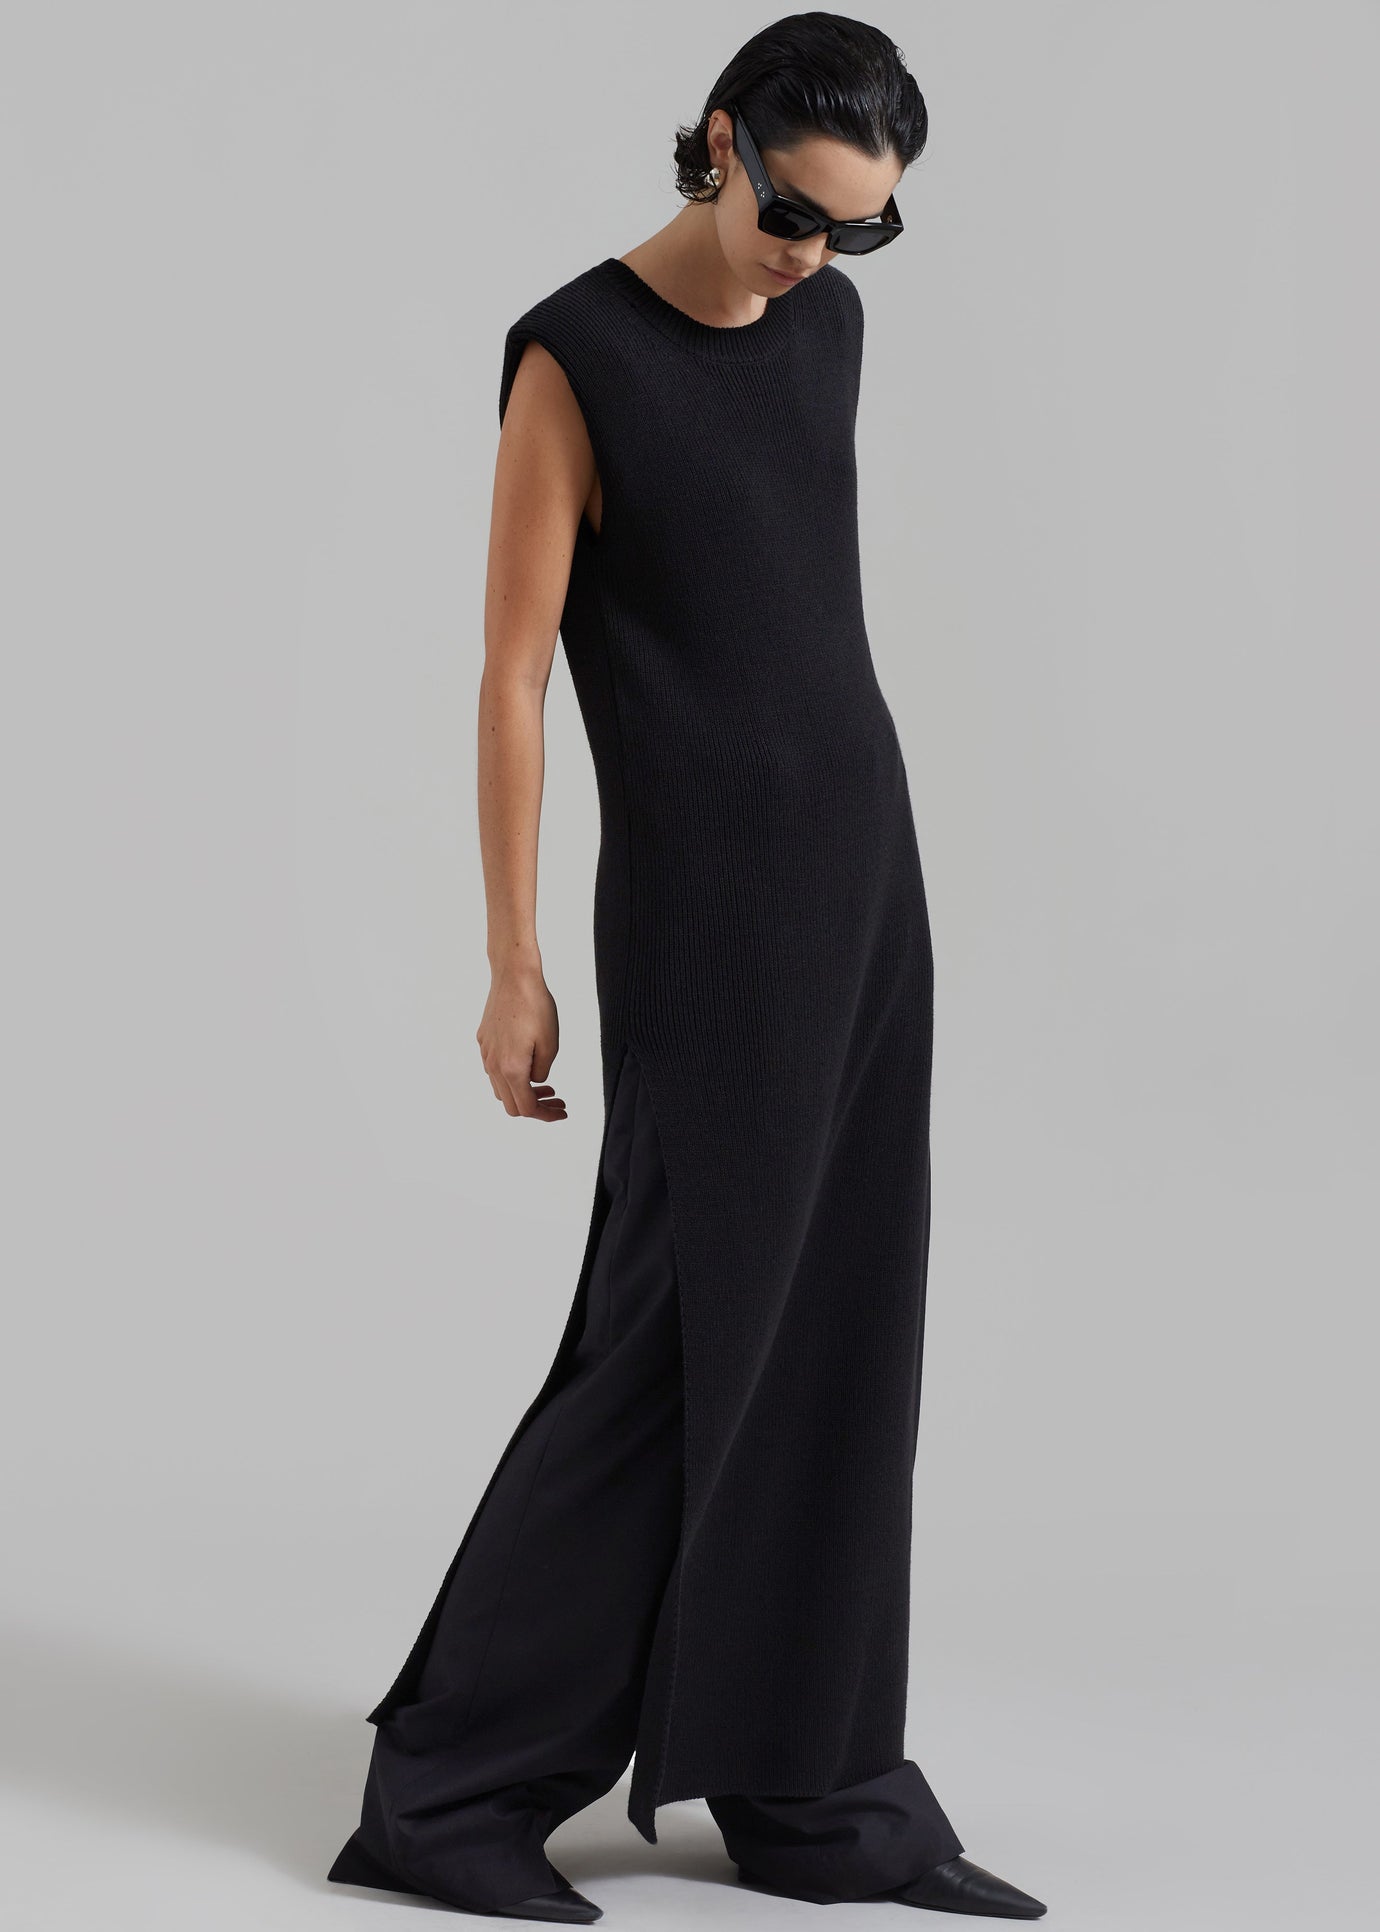 Wren Sleeveless Knit Dress - Black